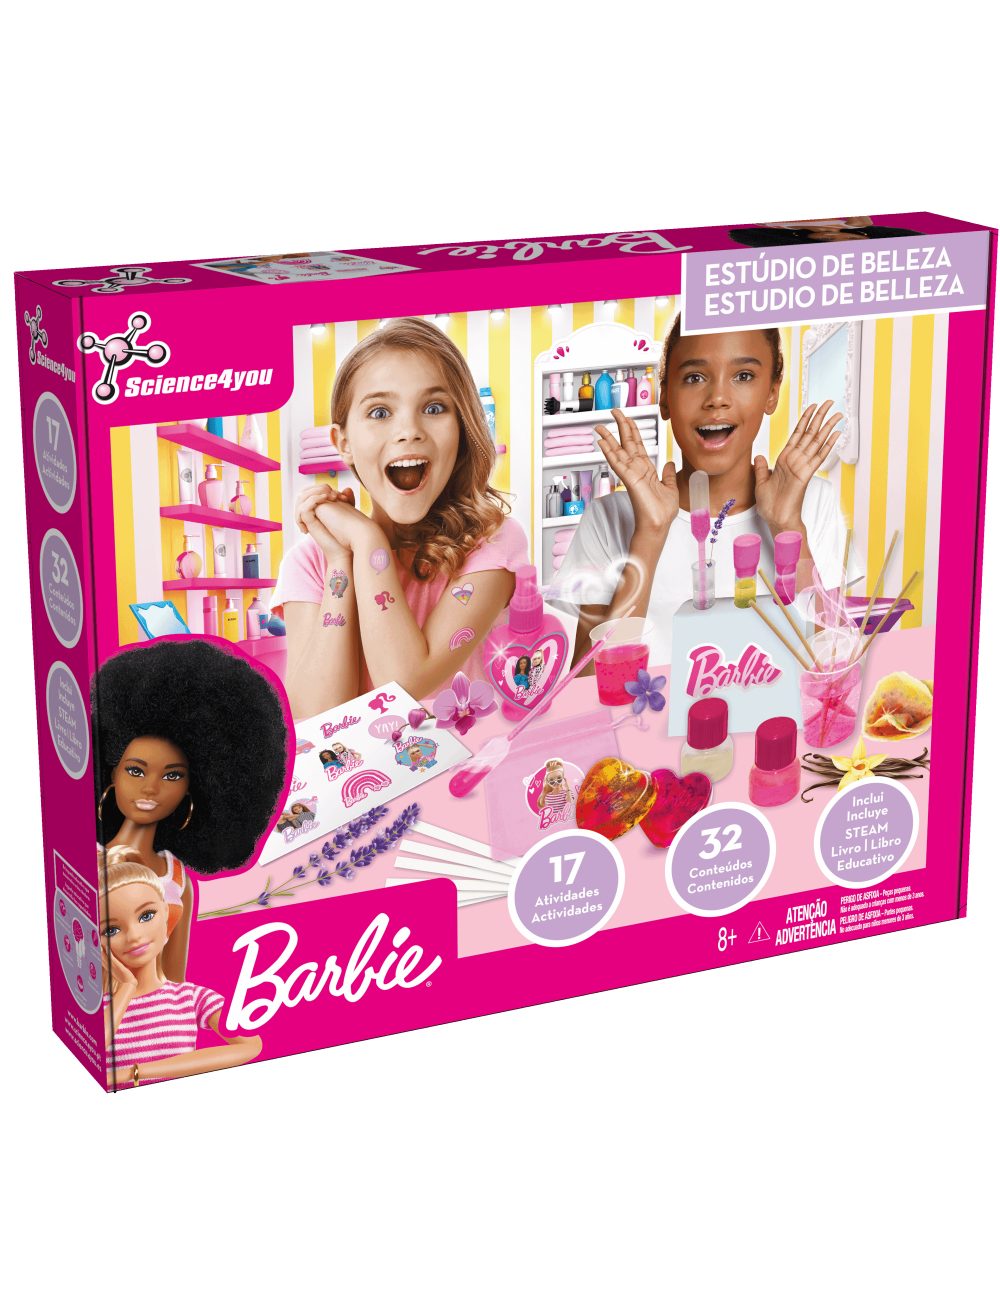 Especial Mês da Criança: 'Tu podes ser o que quiseres. Barbie